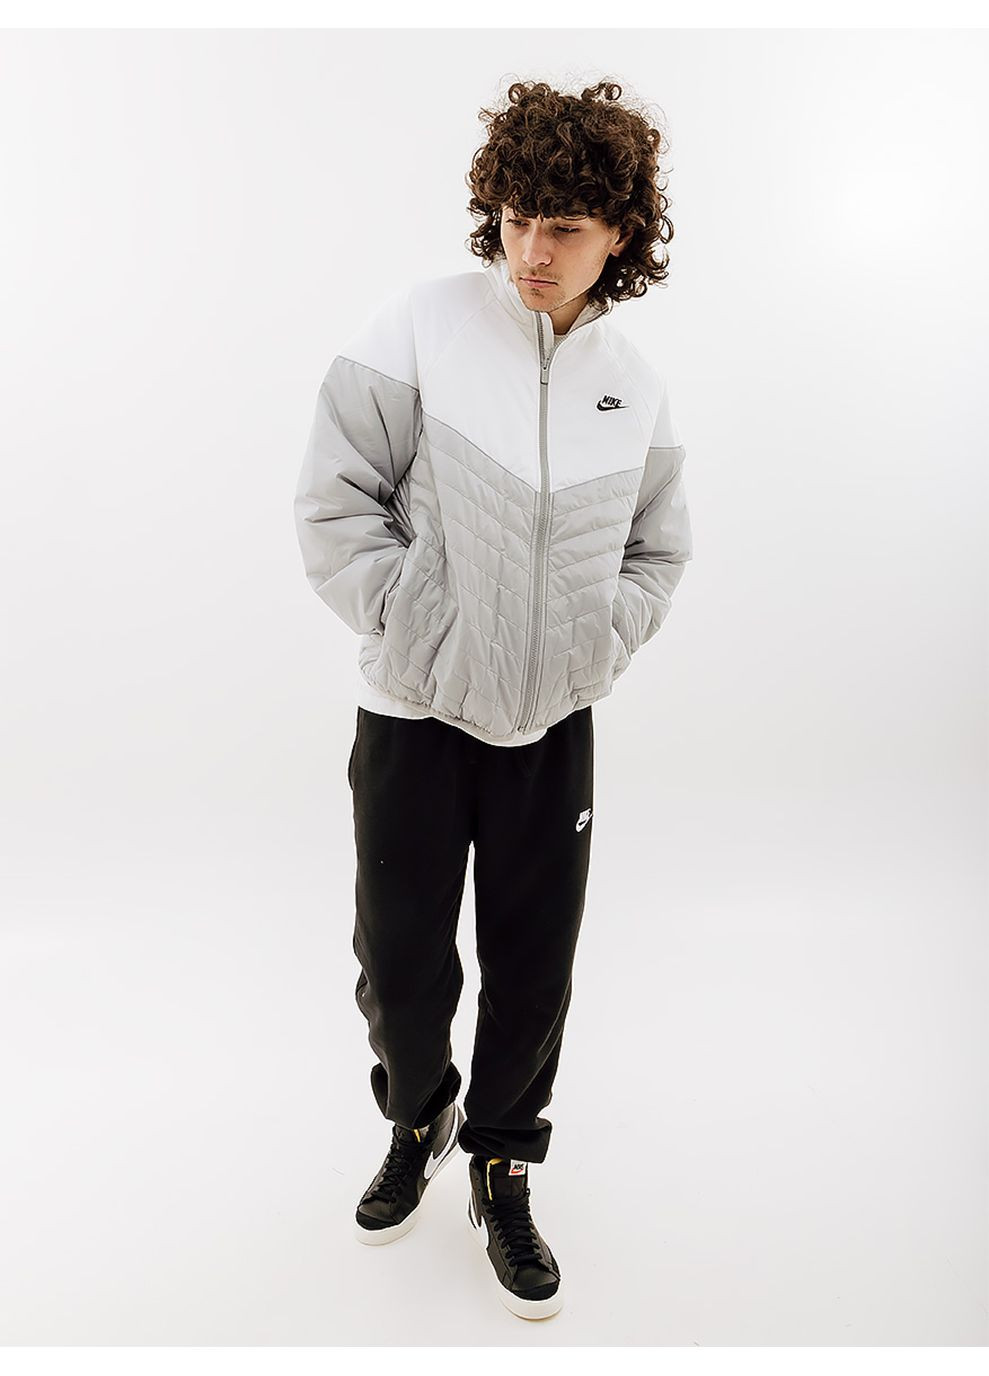 Комбинированная демисезонная мужская куртка midweight puffer комбинированный Nike